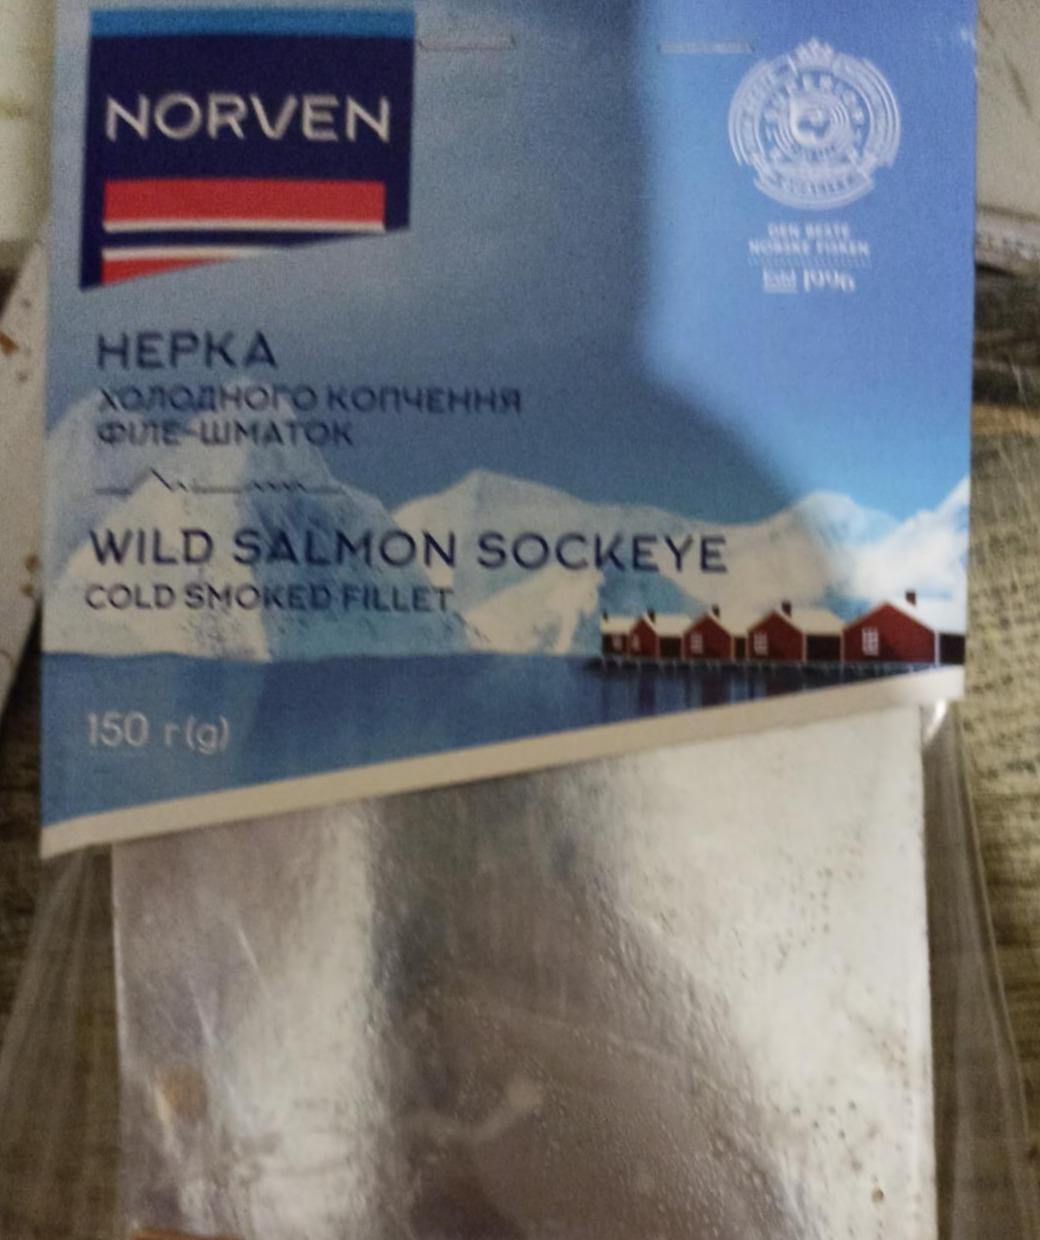 Фото - Нерка філе-шматок холодного копчення Wild Salmon Sockeye Norven